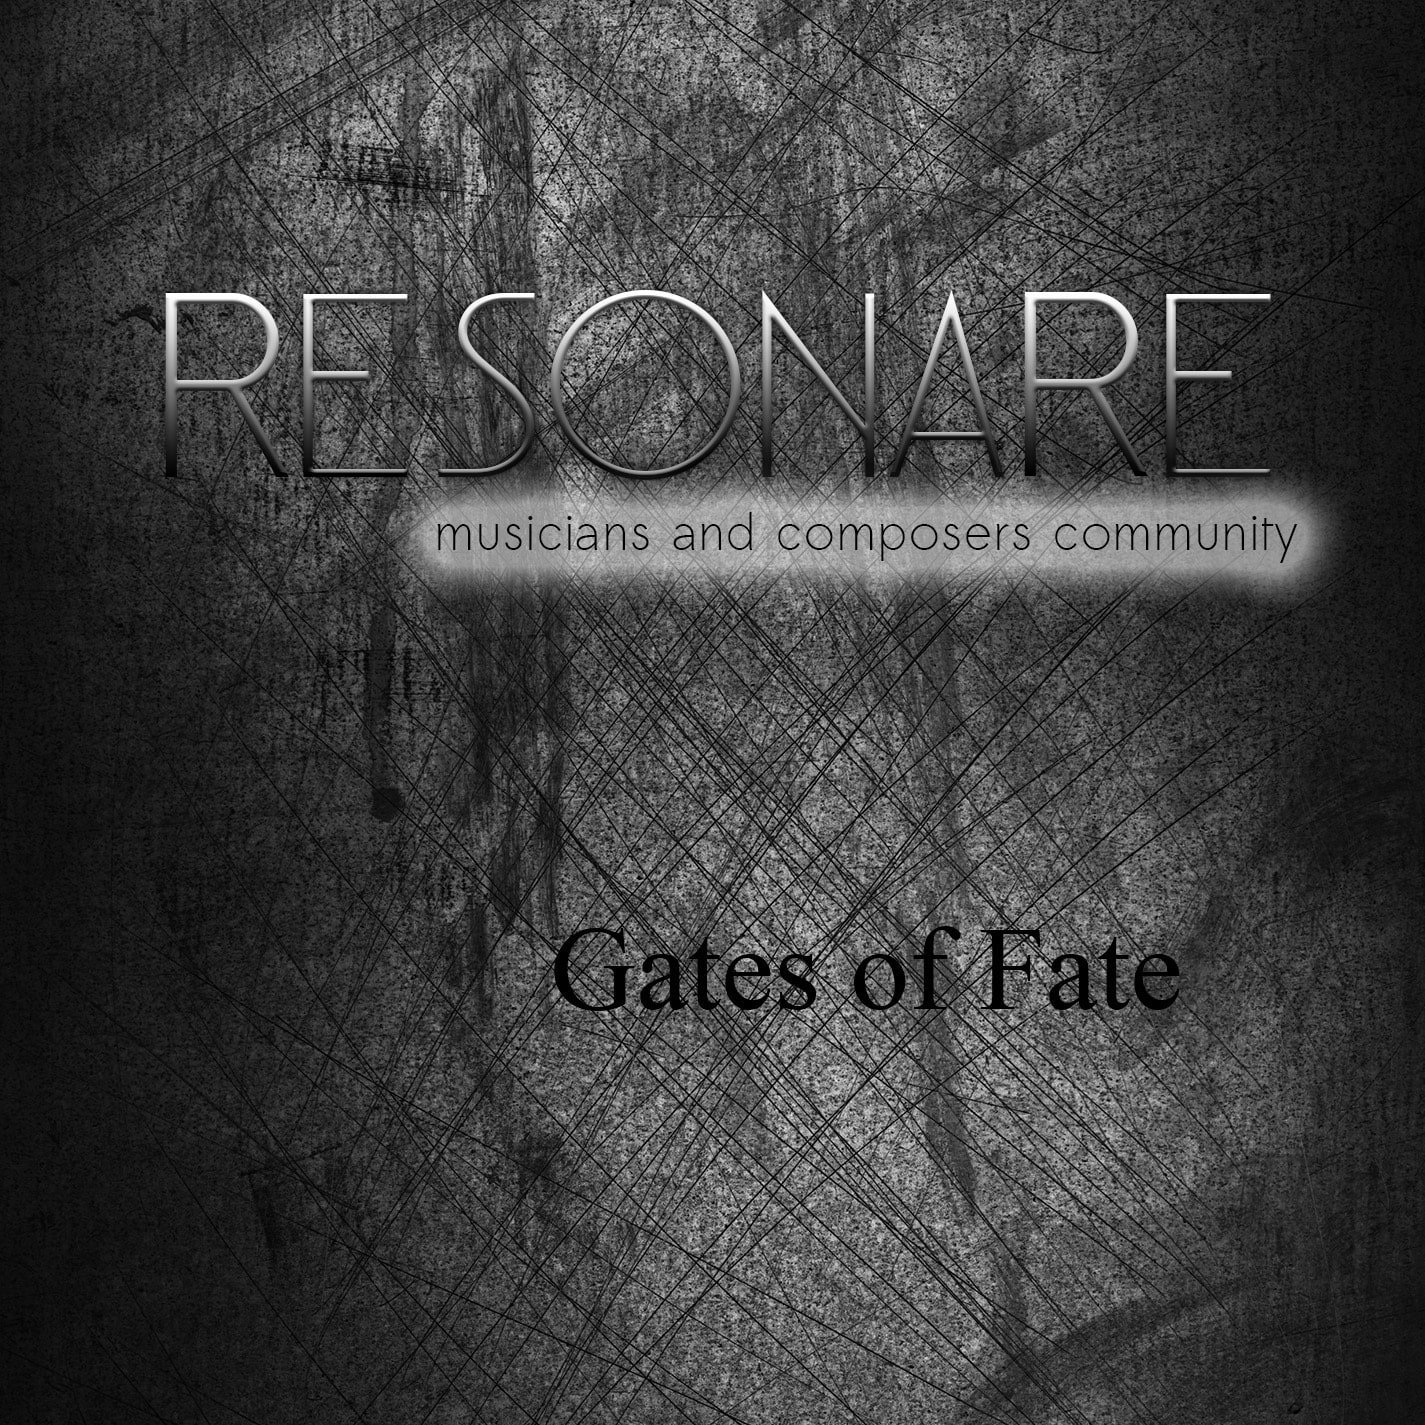 gates of fate